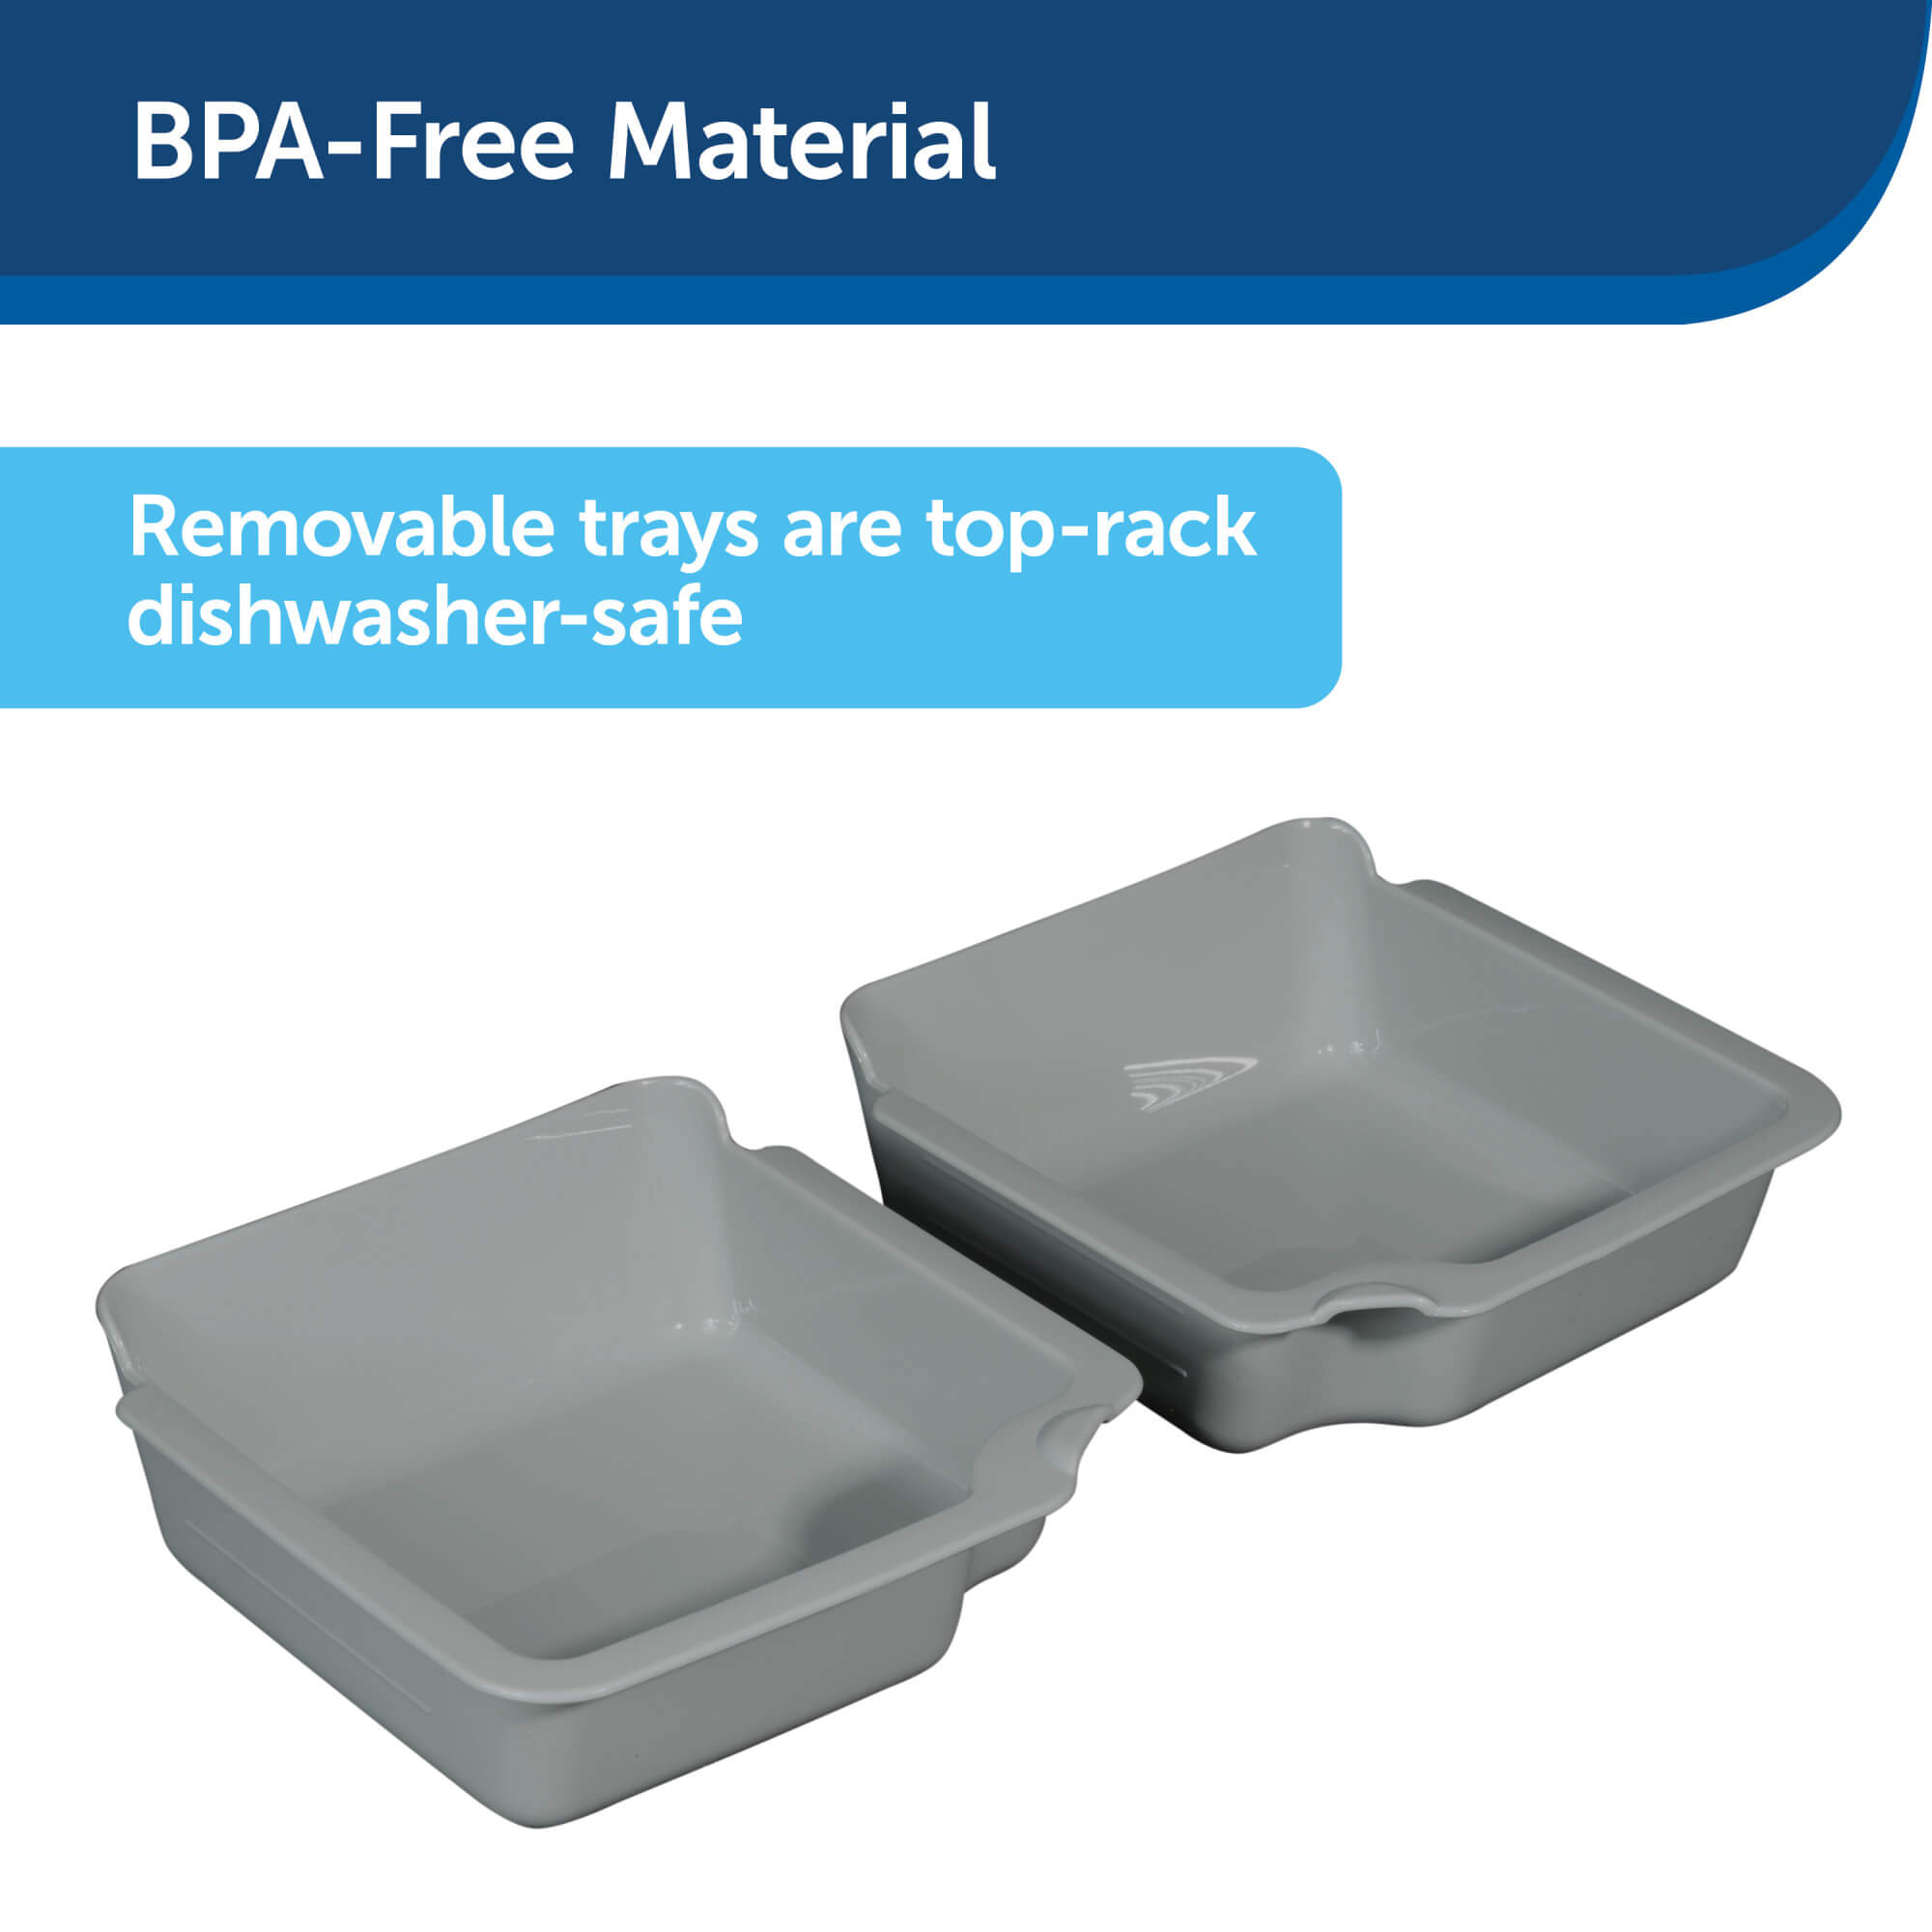 BPA-free material